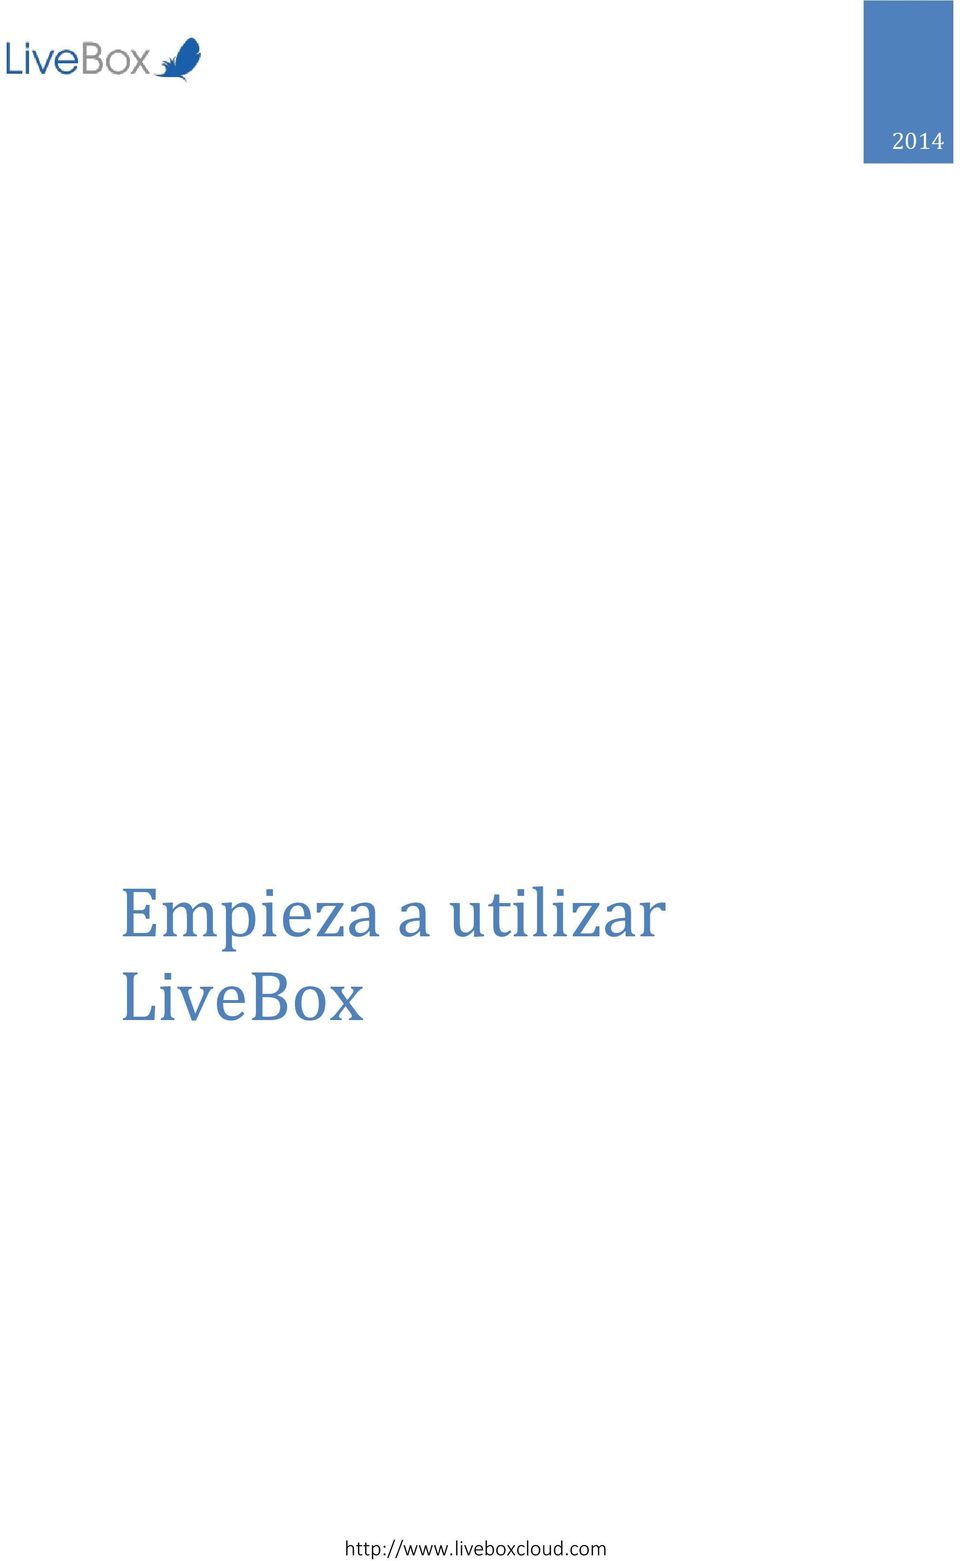 LiveBox